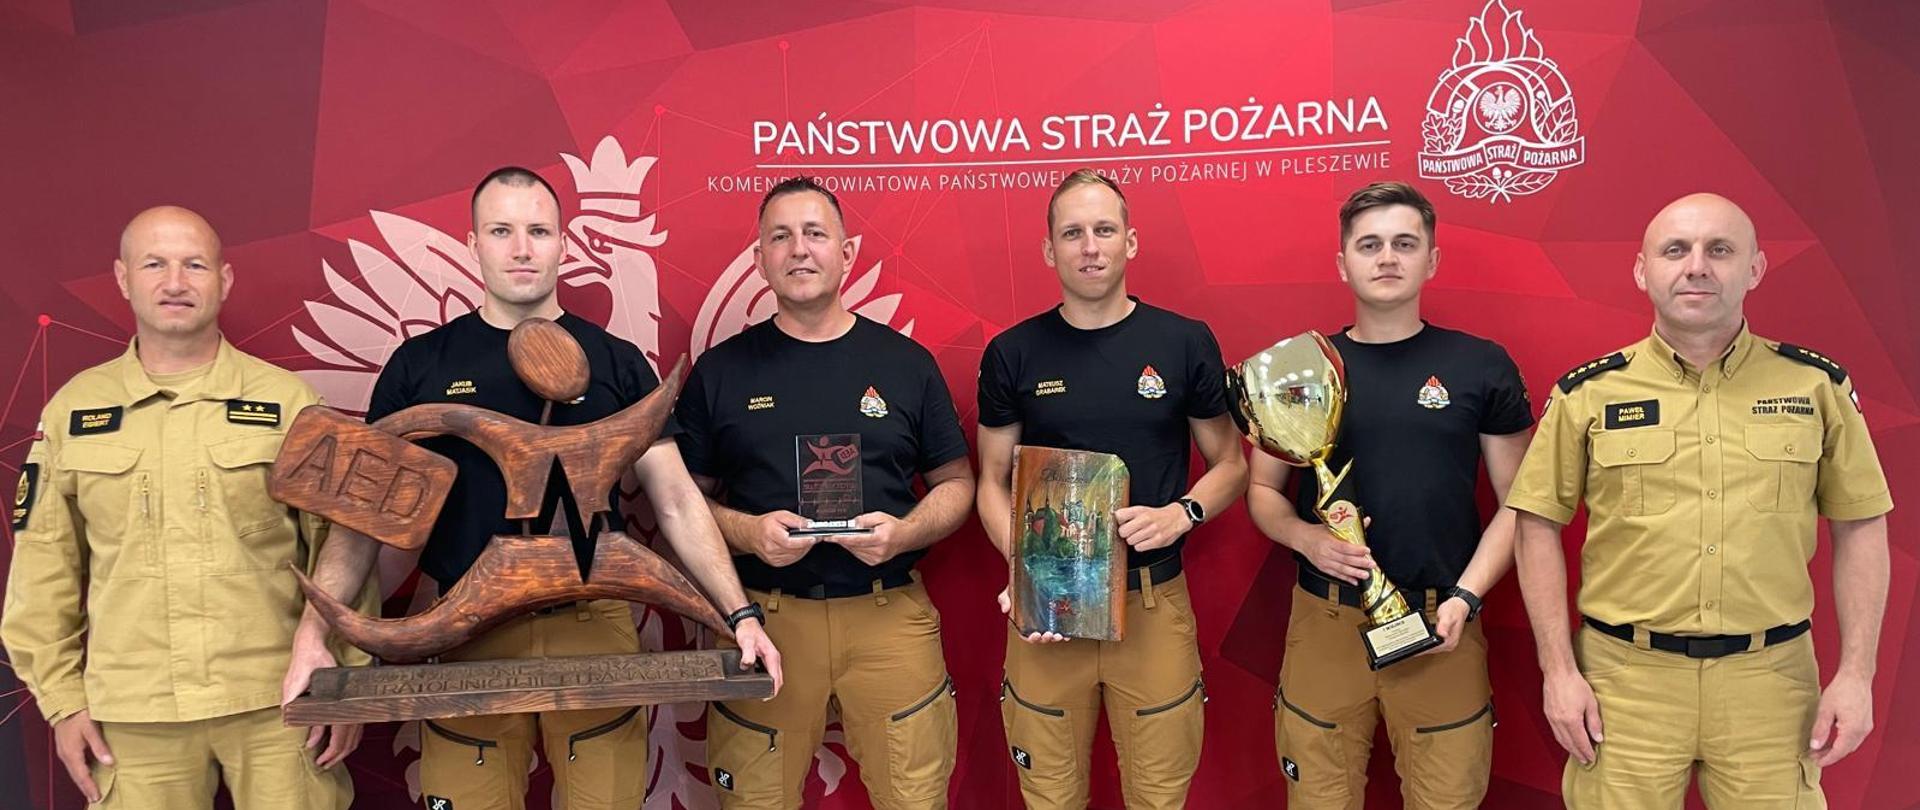 Strażacy z pucharem i statuetką na tle banera komendy powiatowej psp w Pleszewie